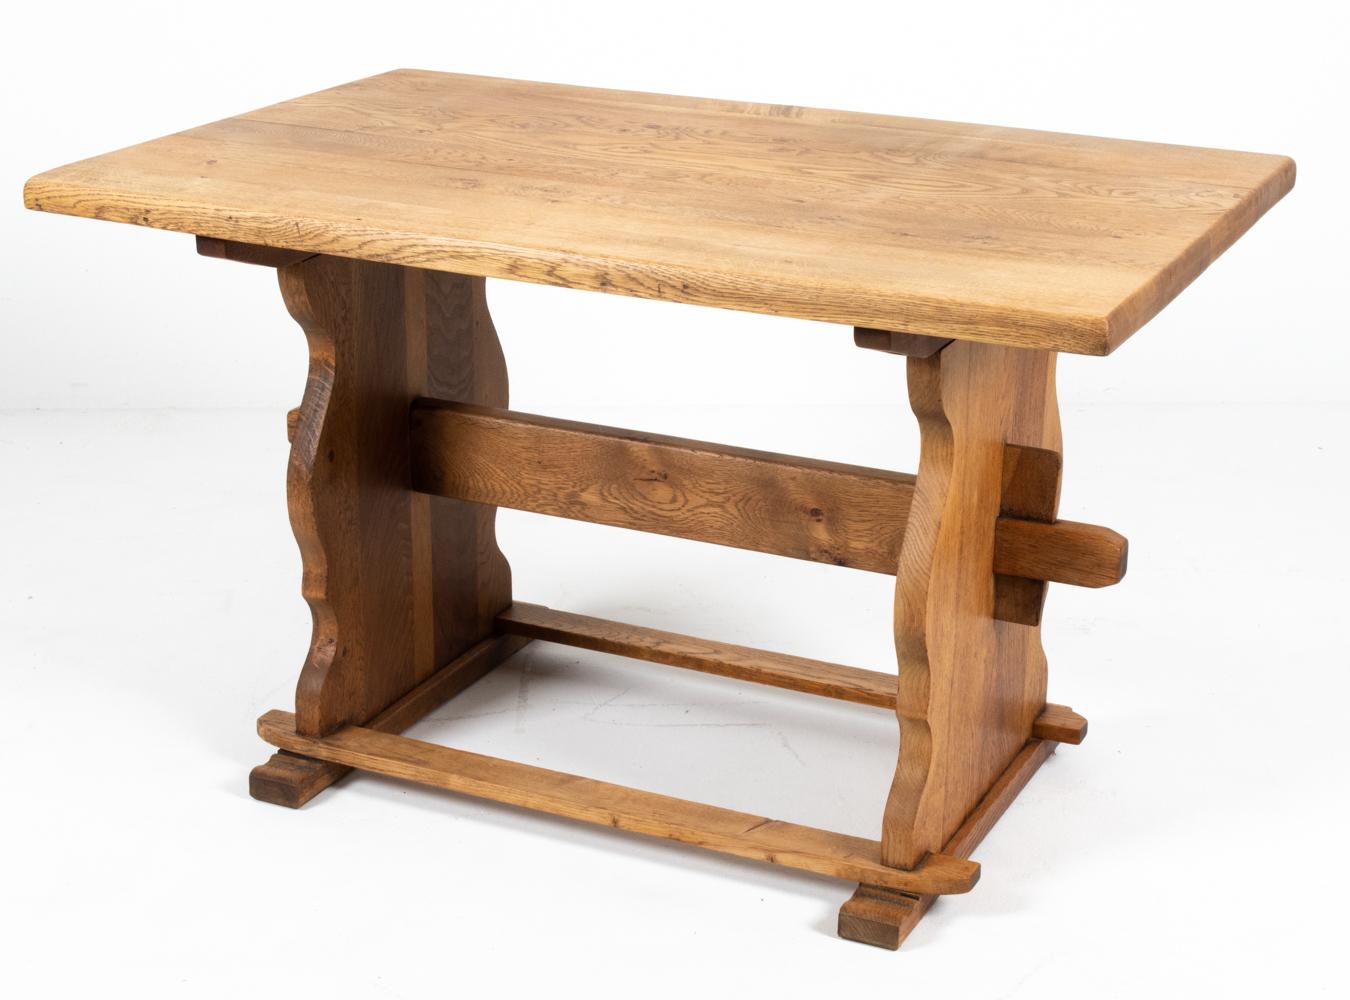 Cette charmante table de salle à manger danoise du milieu du XXe siècle en bois de chêne sculpté est un fabuleux exemple de design provincial scandinave. Pleine de charme, cette table à tréteaux présente un design robuste avec une base sculptée et